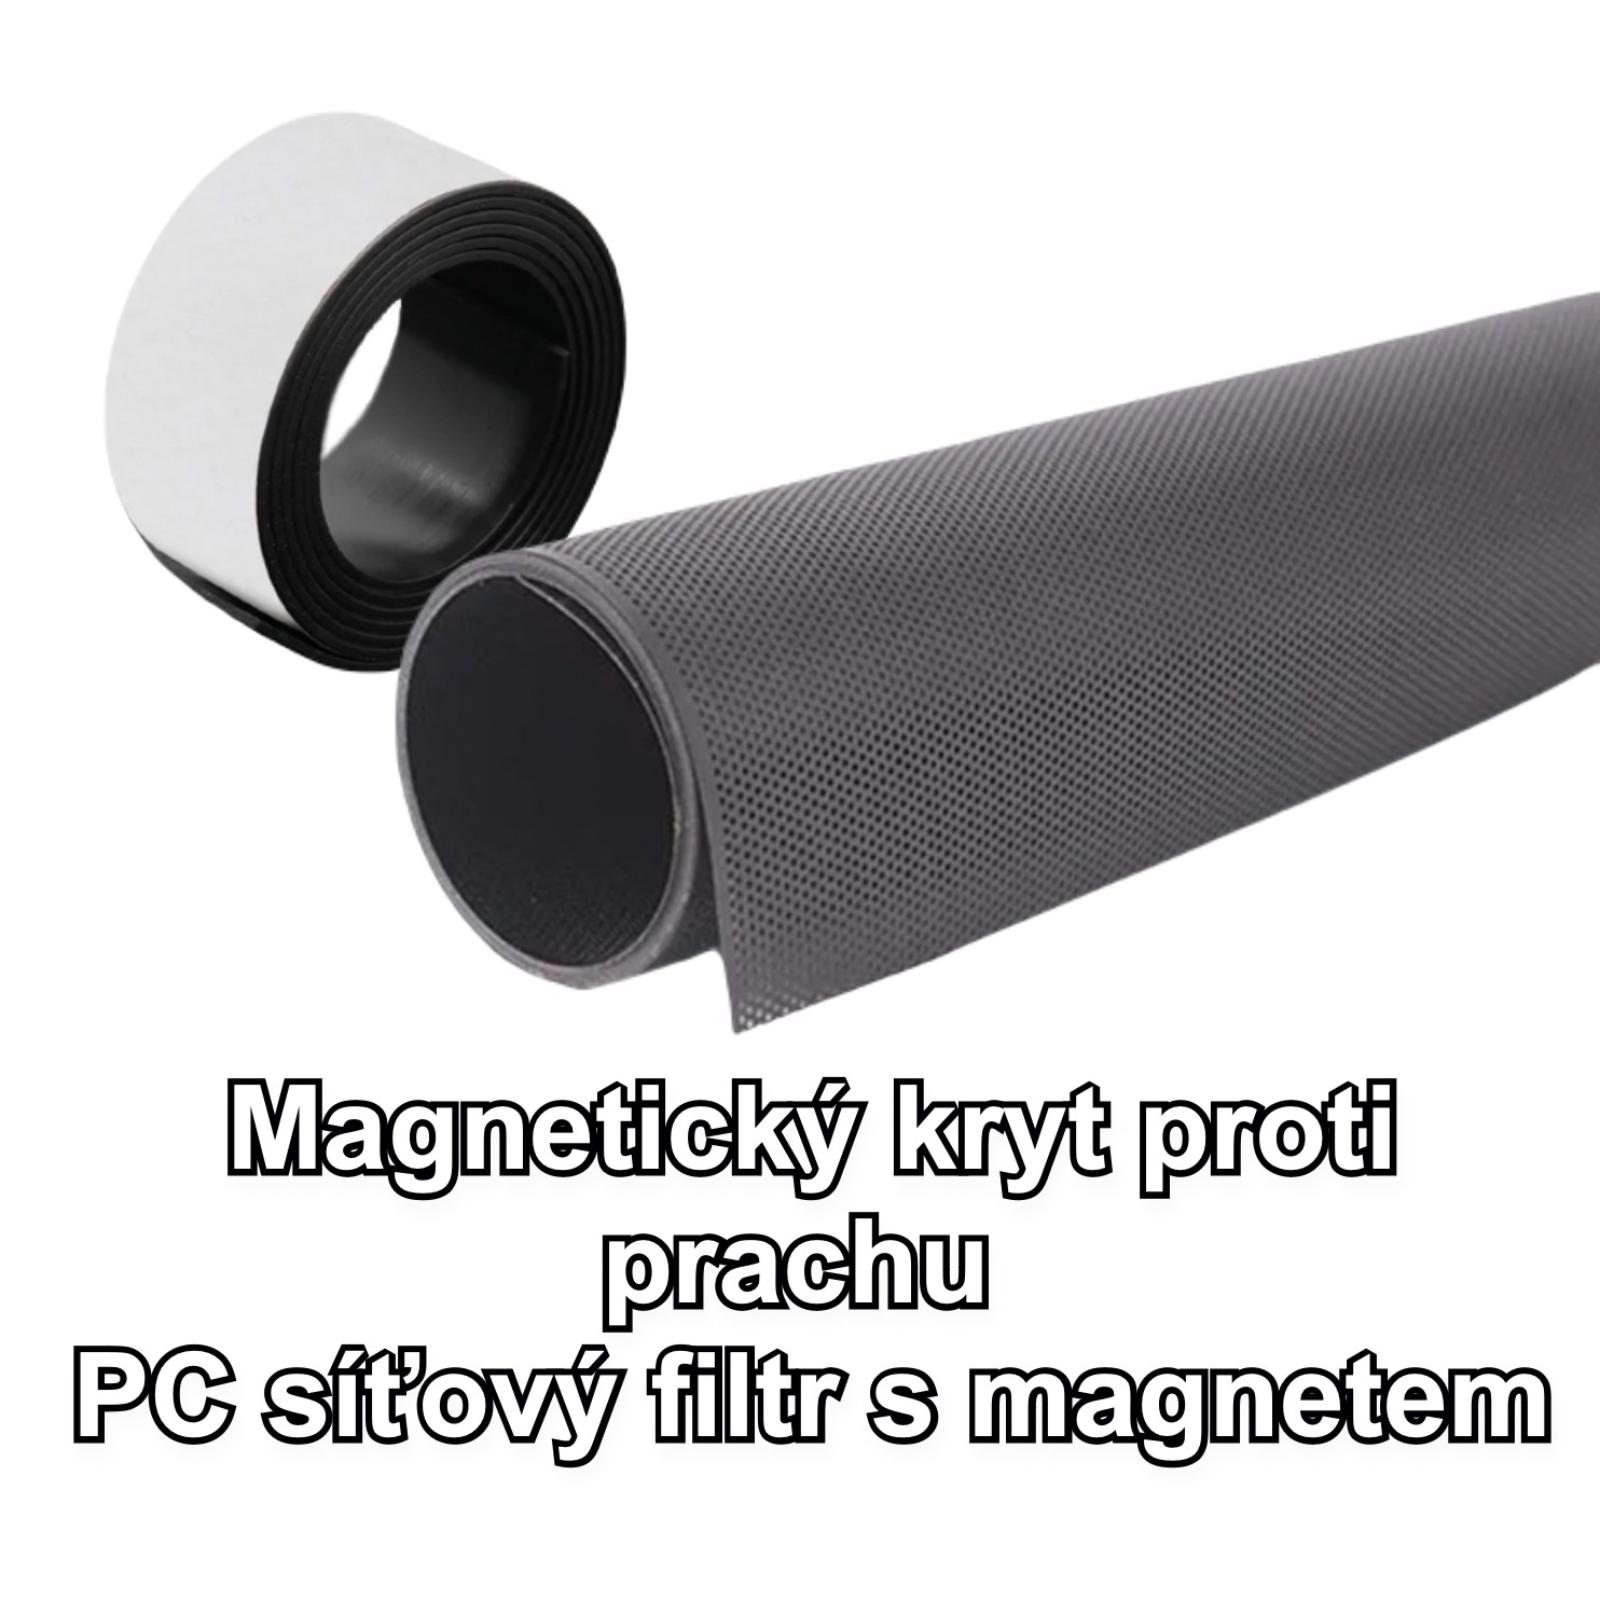 Magnetický kryt proti prachu PC sieťový filter s magnetom - Komponenty pre PC